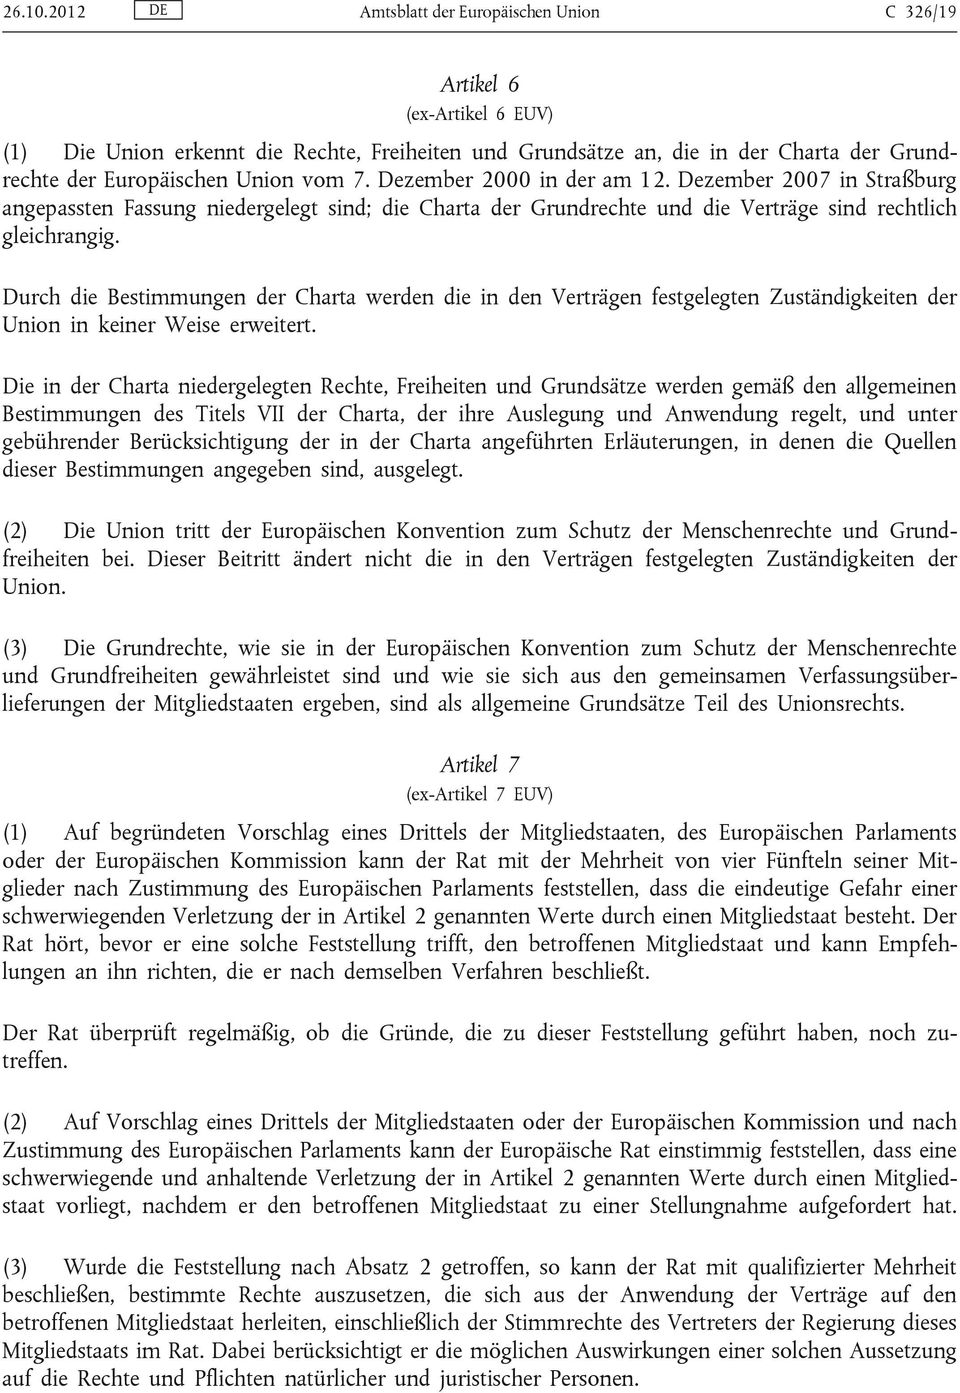 vom 7. Dezember 2000 in der am 12. Dezember 2007 in Straßburg angepassten Fassung niedergelegt sind; die Charta der Grundrechte und die Verträge sind rechtlich gleichrangig.